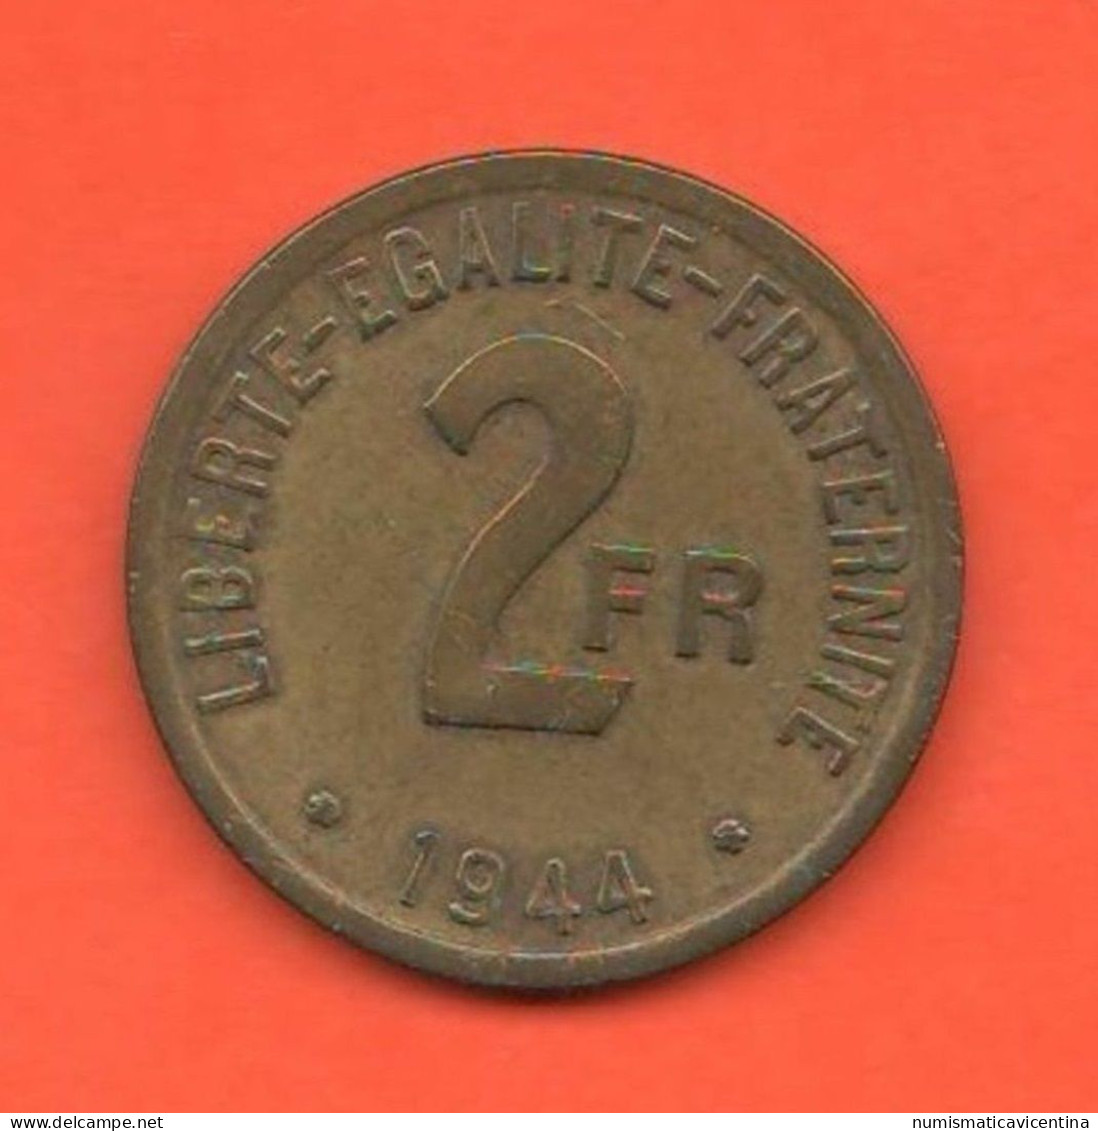 2 Francs 1944 Francia France Libre Bronze Coin War Currency - 2 Francs